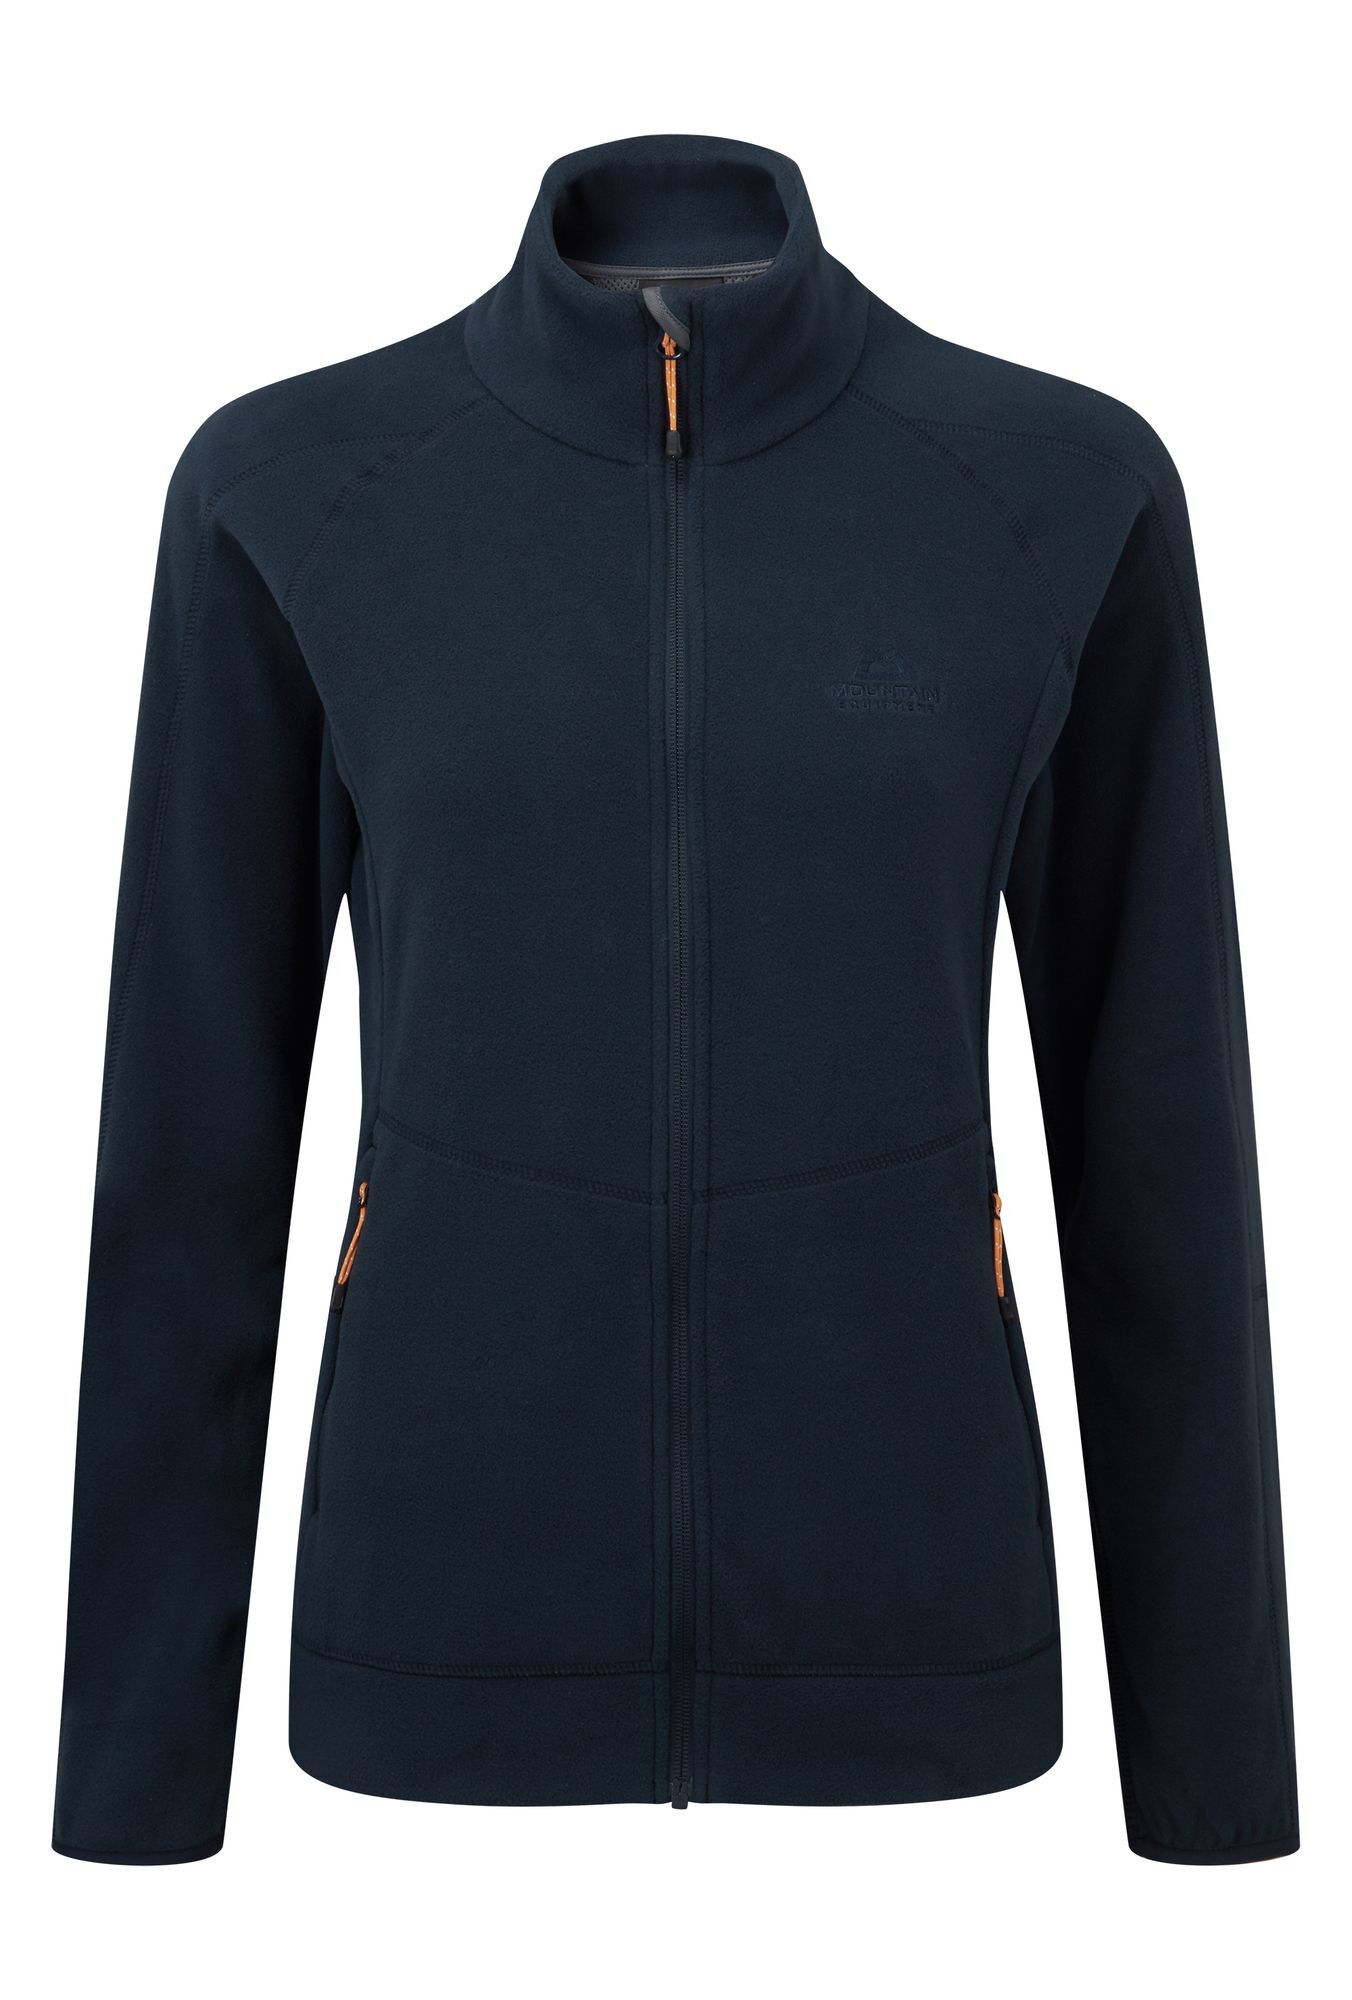 Mountain Equipment Centum Jacket - Fleece jacket - Women's | Hardloop